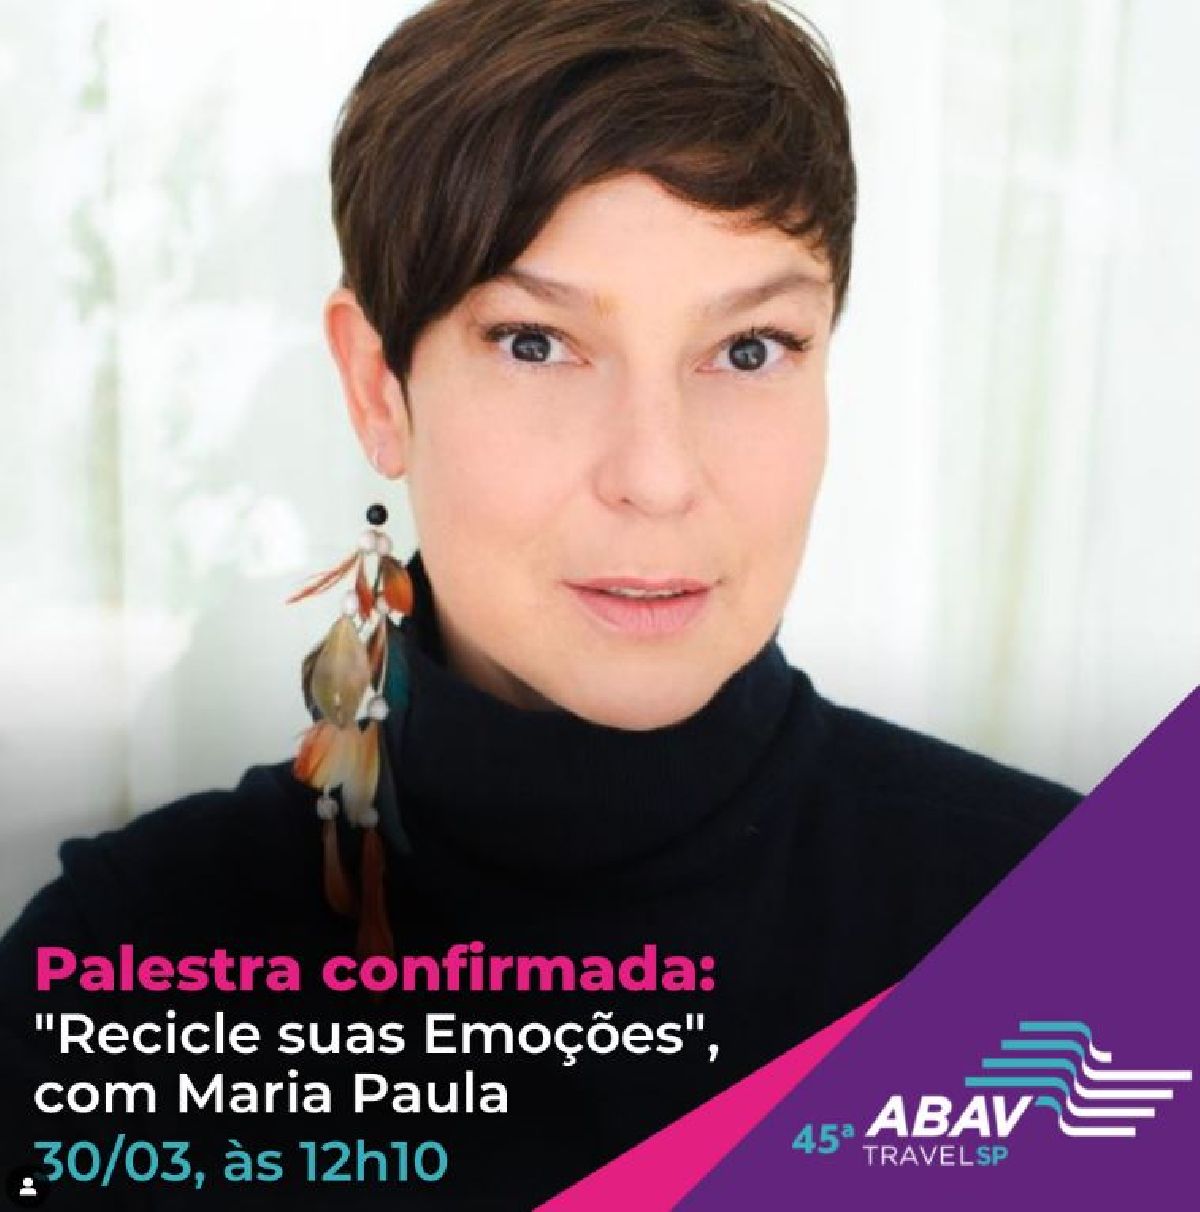 45ª Abav TravelSP terá bate-papo com Maria Paula, apresentadora, psicóloga e atriz